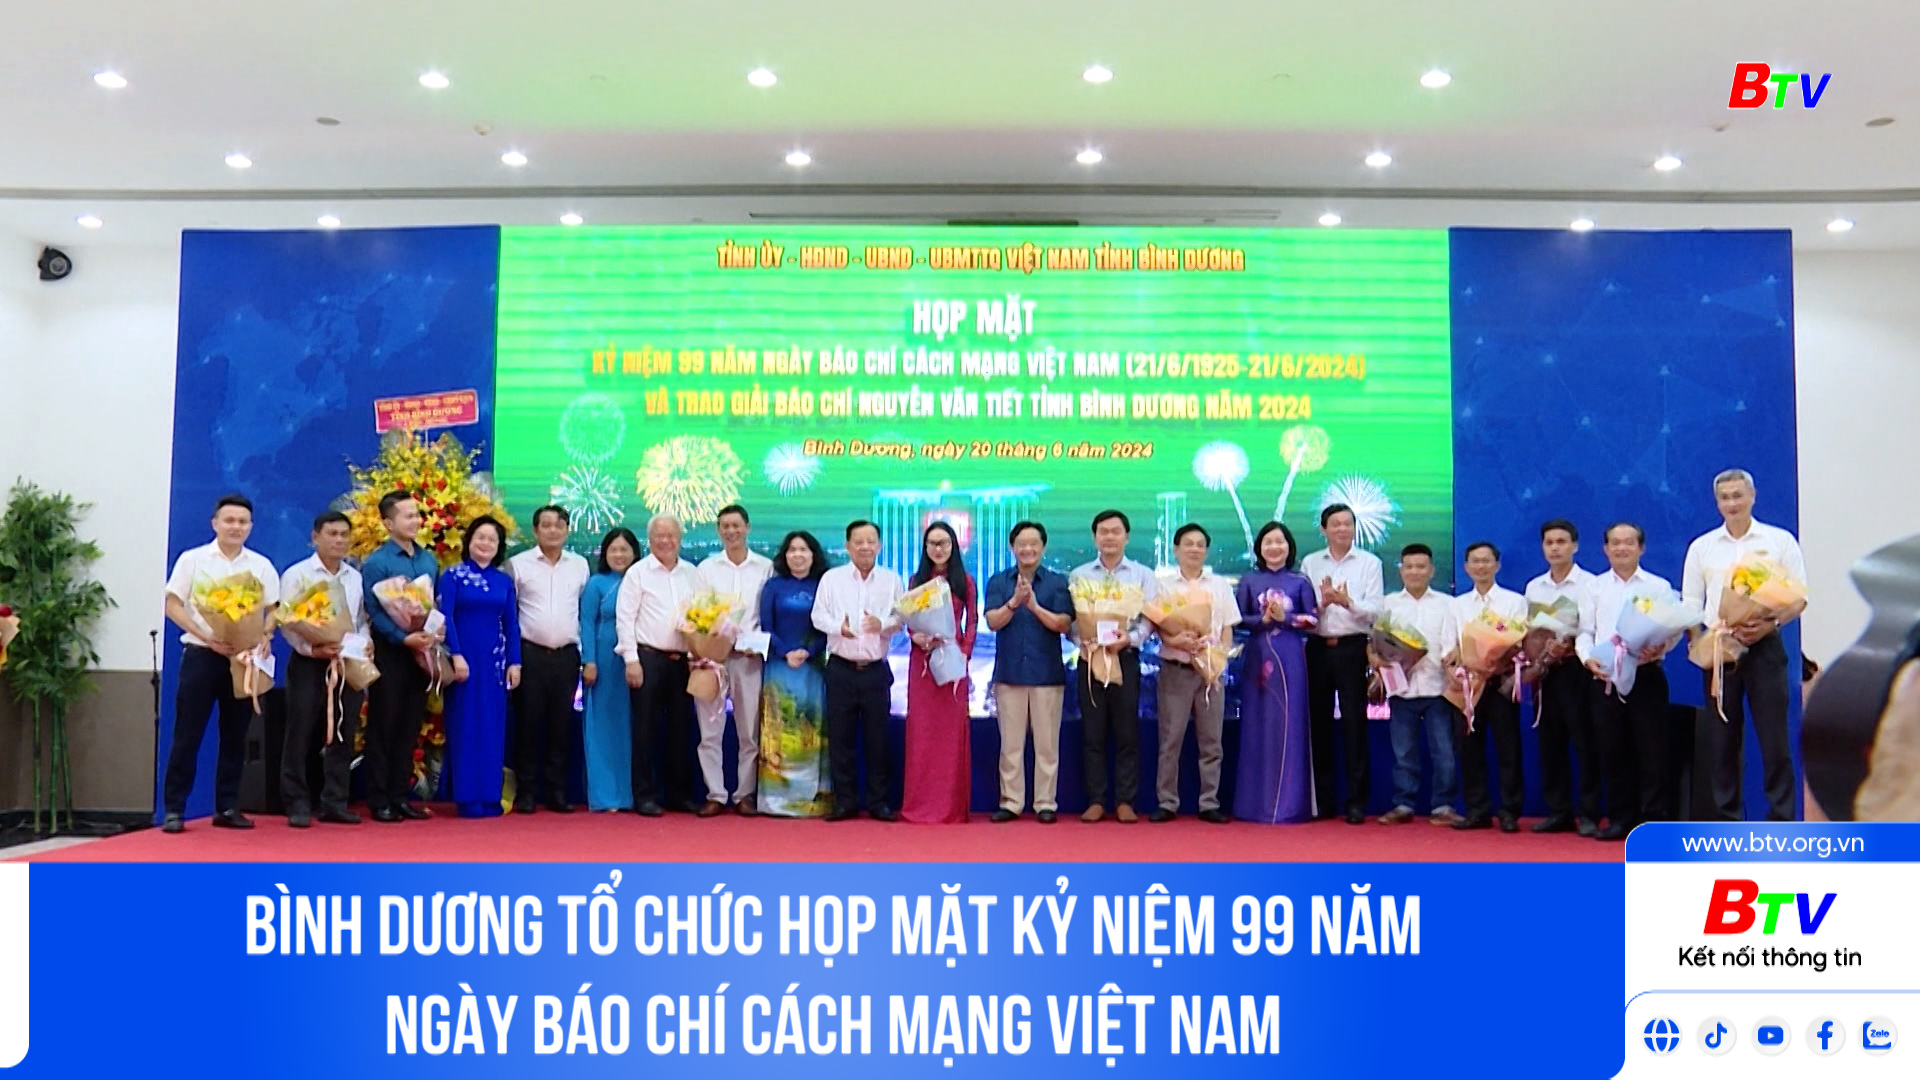 Bình Dương tổ chức Họp mặt kỷ niệm 99 năm Ngày Báo chí cách mạng Việt Nam